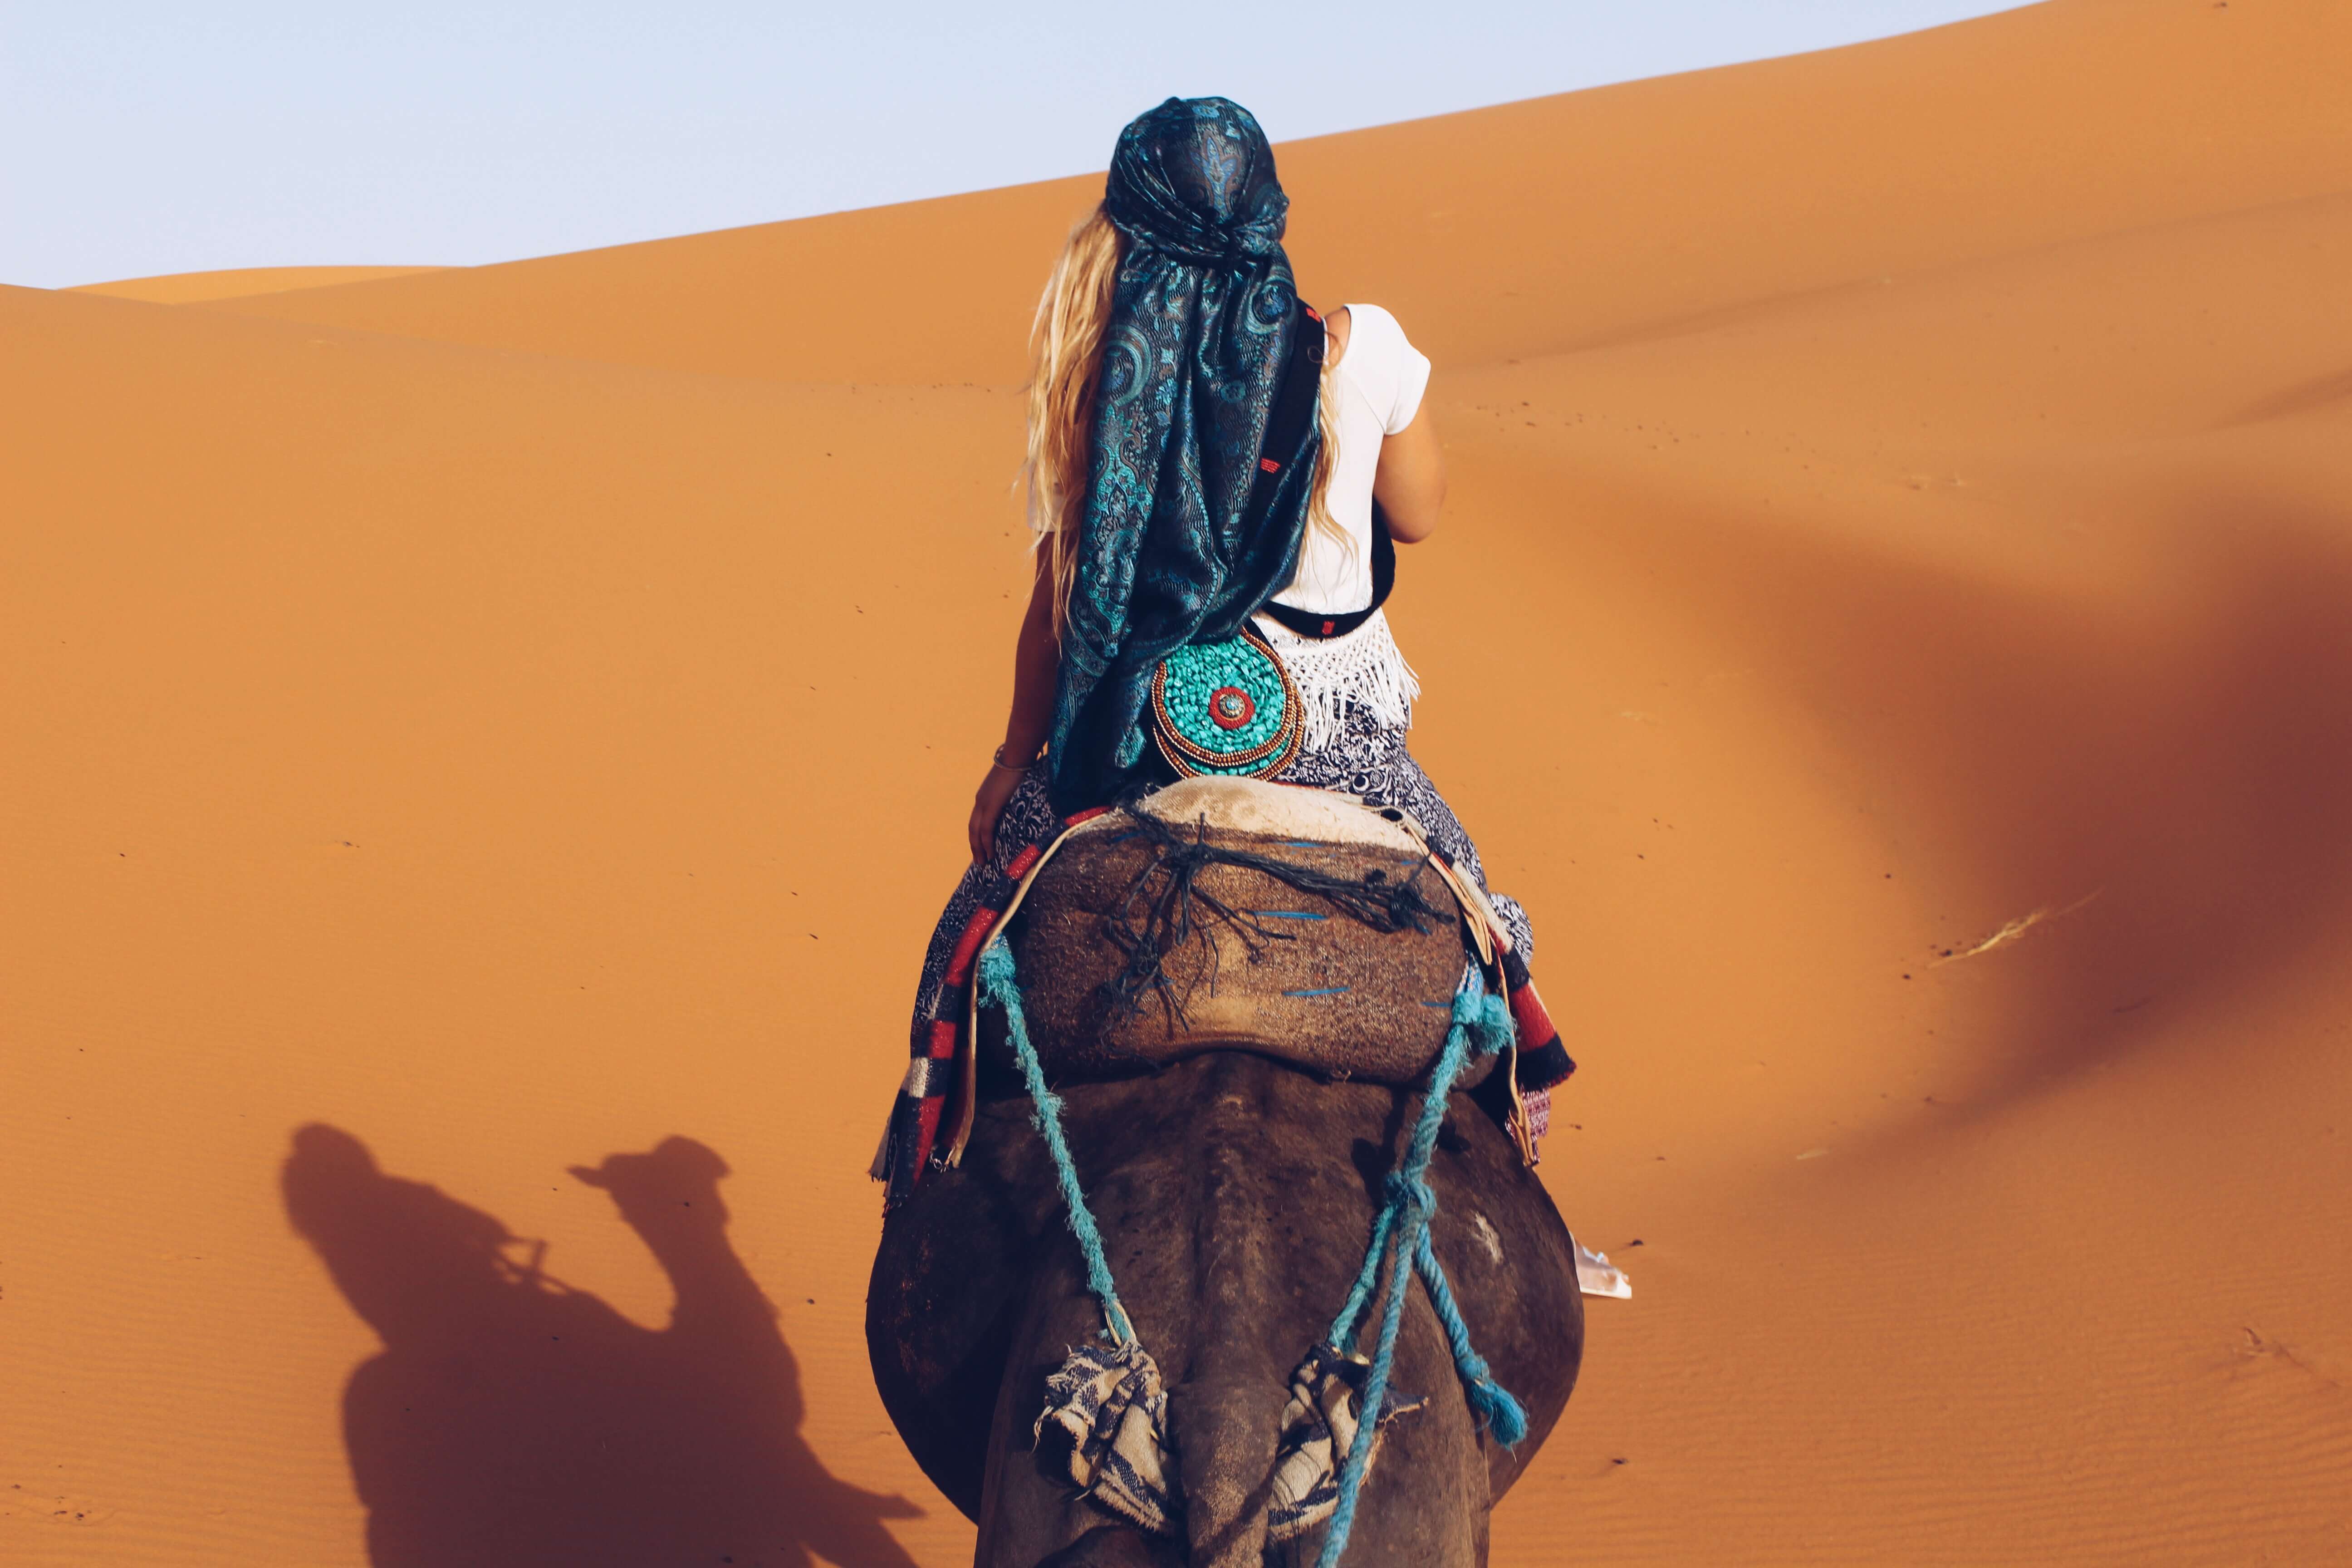 Camel riding in Morocco Sahara desert